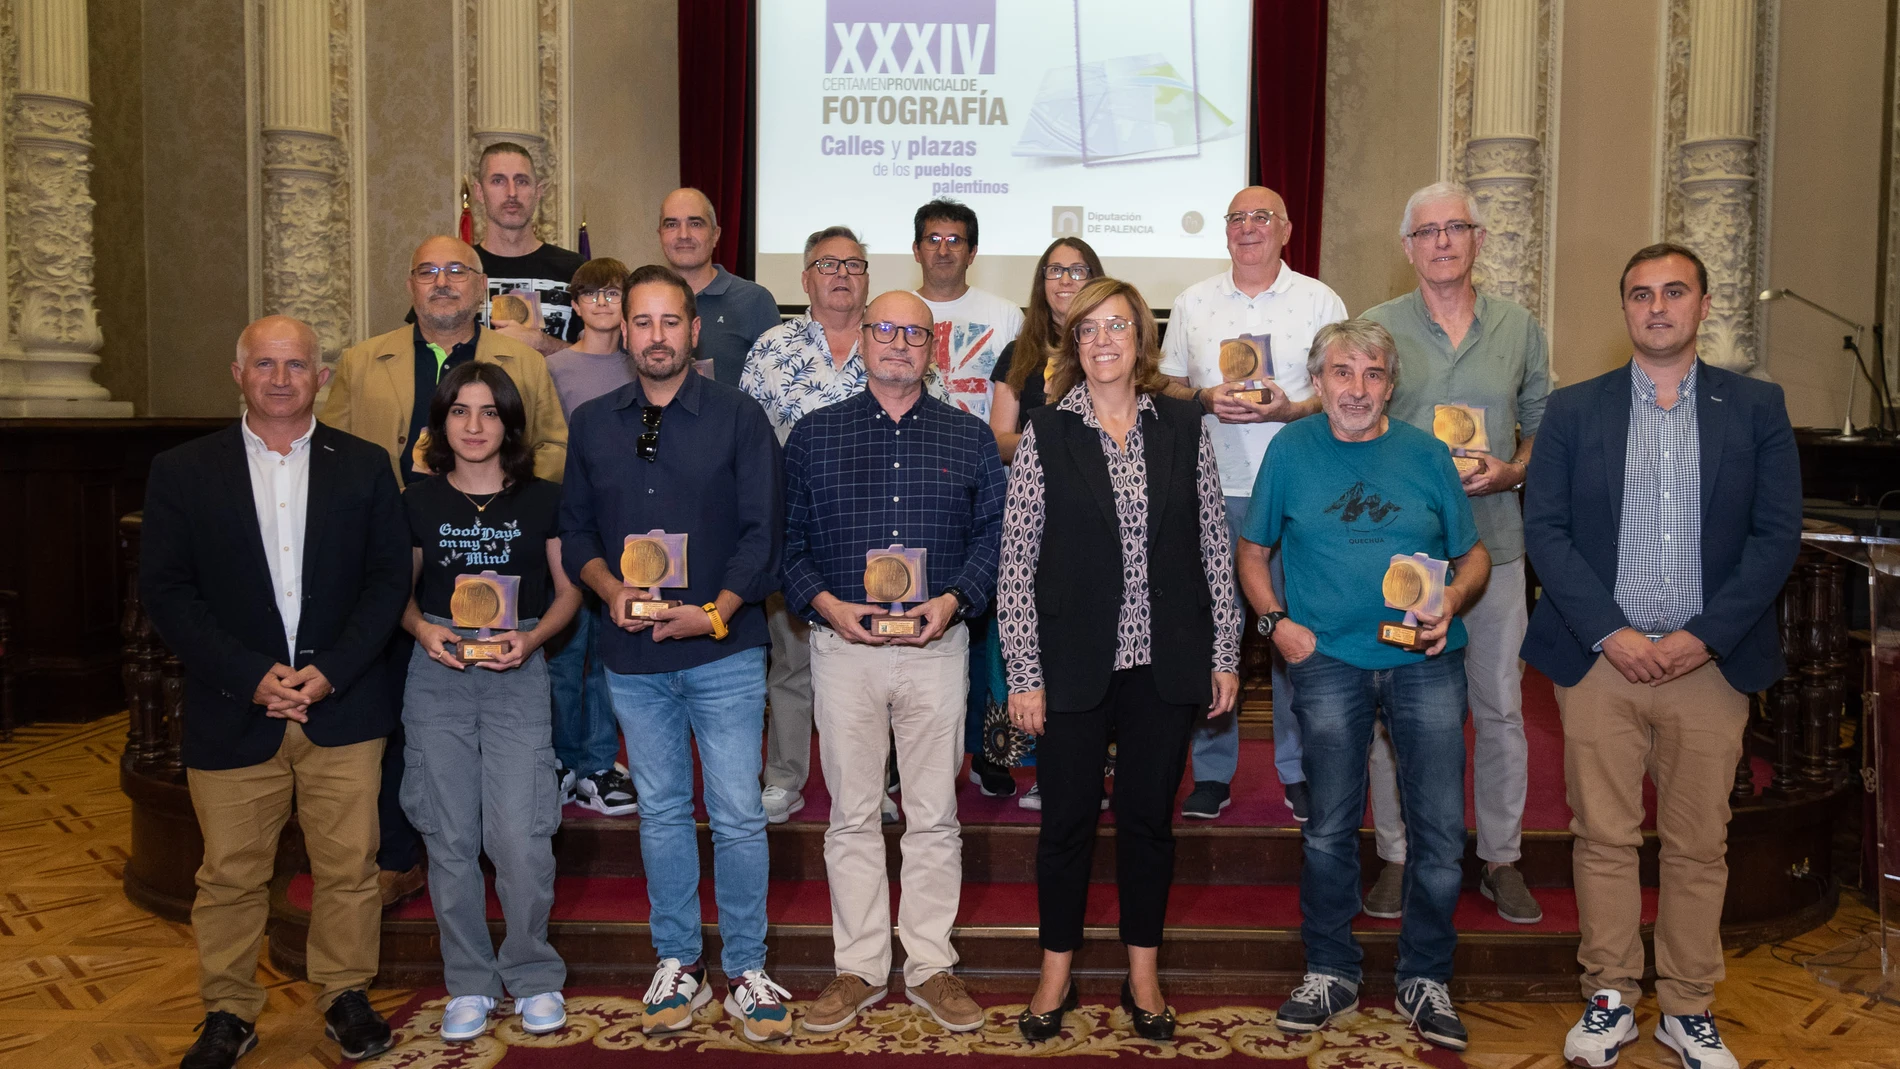 Entregan los premios del XXXIV Certamen de Fotografía de la Diputación de Palencia